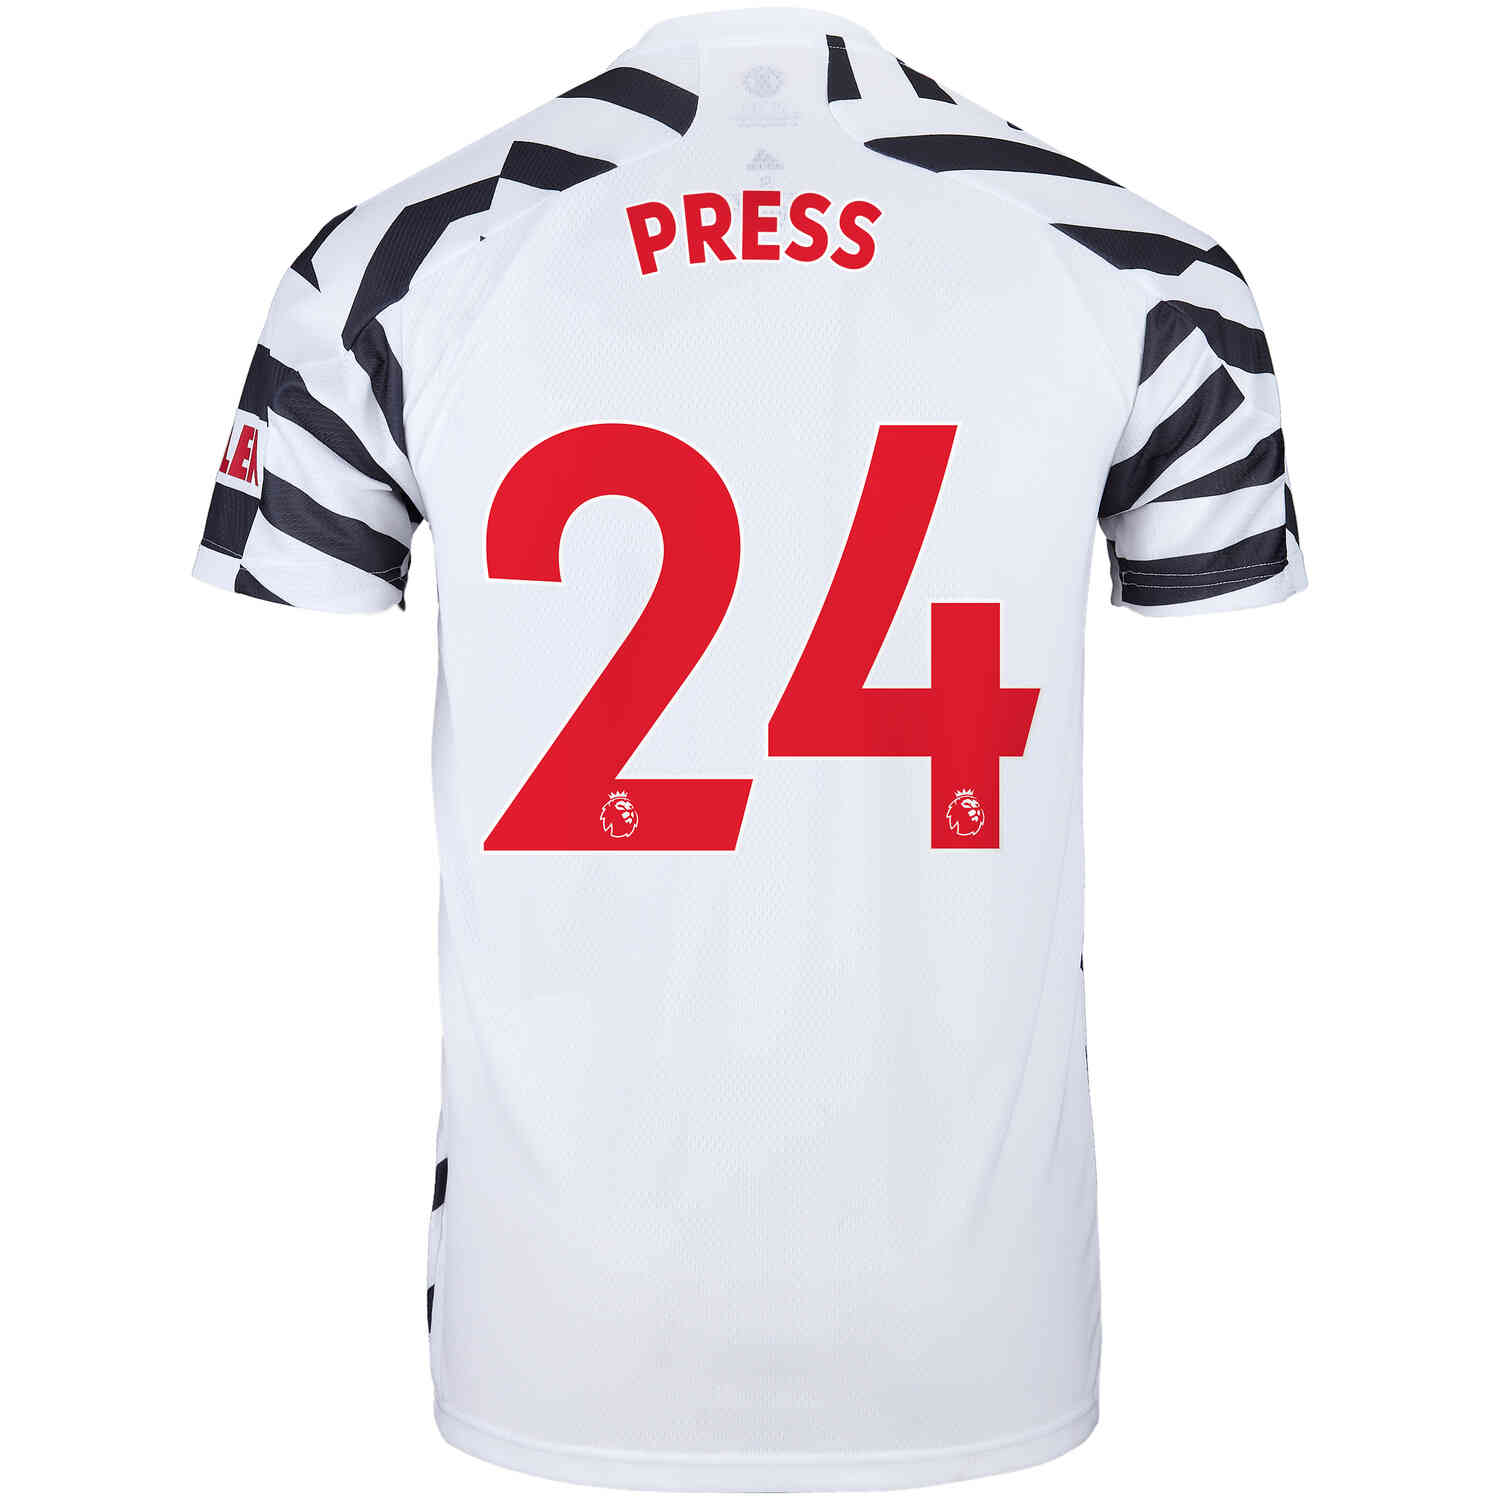 christen press jersey